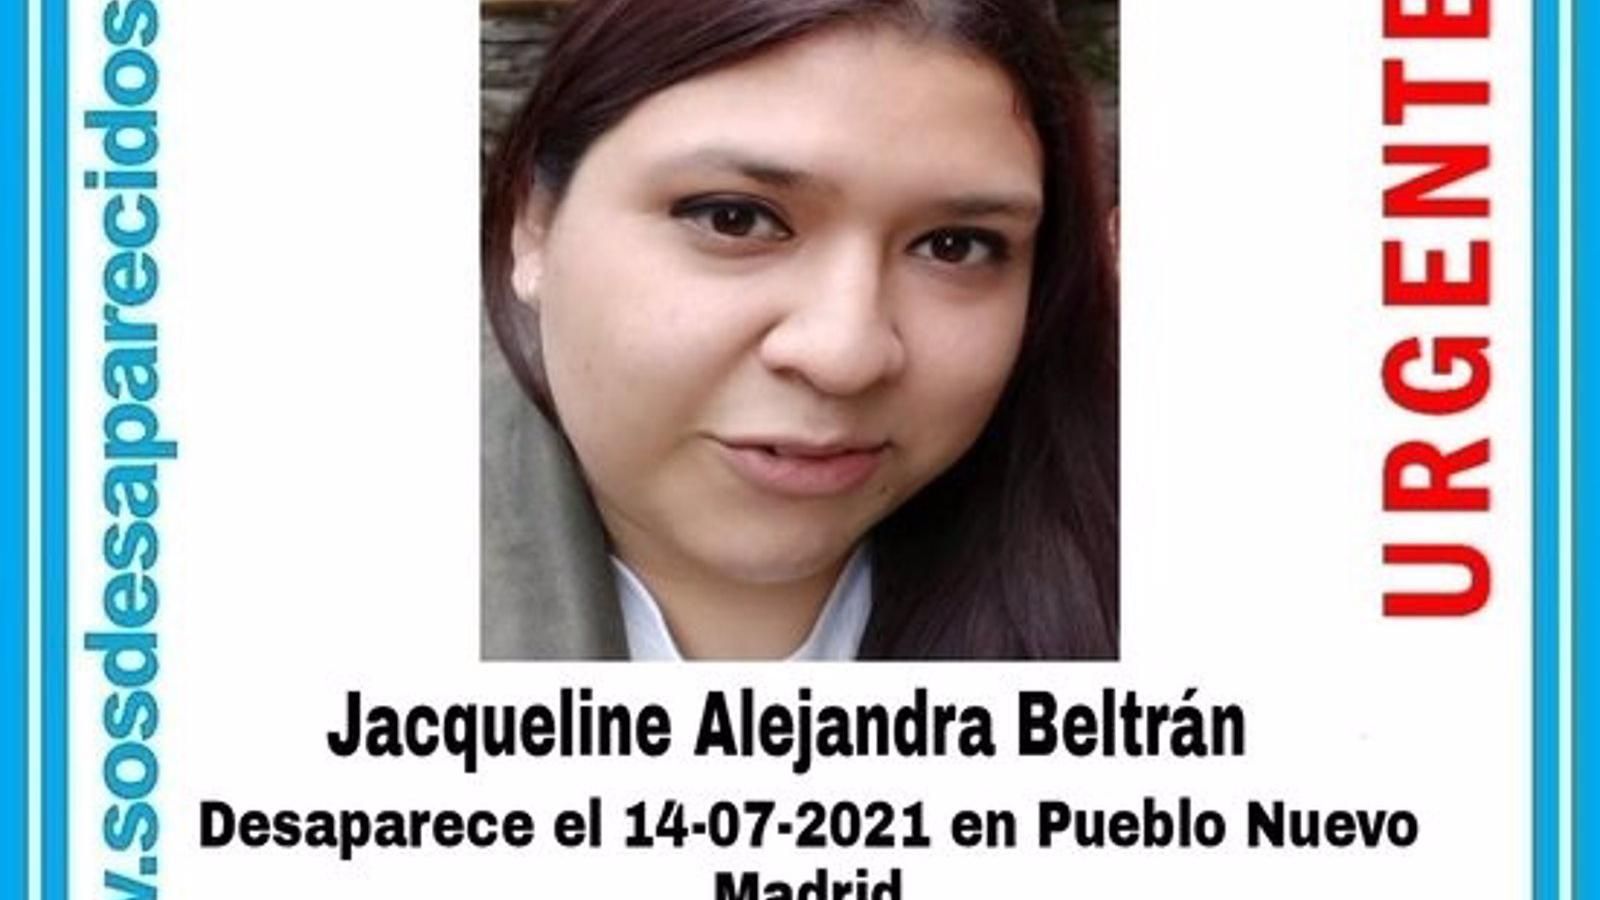 Desaparecida desde el 14 de julio una joven de 28 años en Pueblo Nuevo